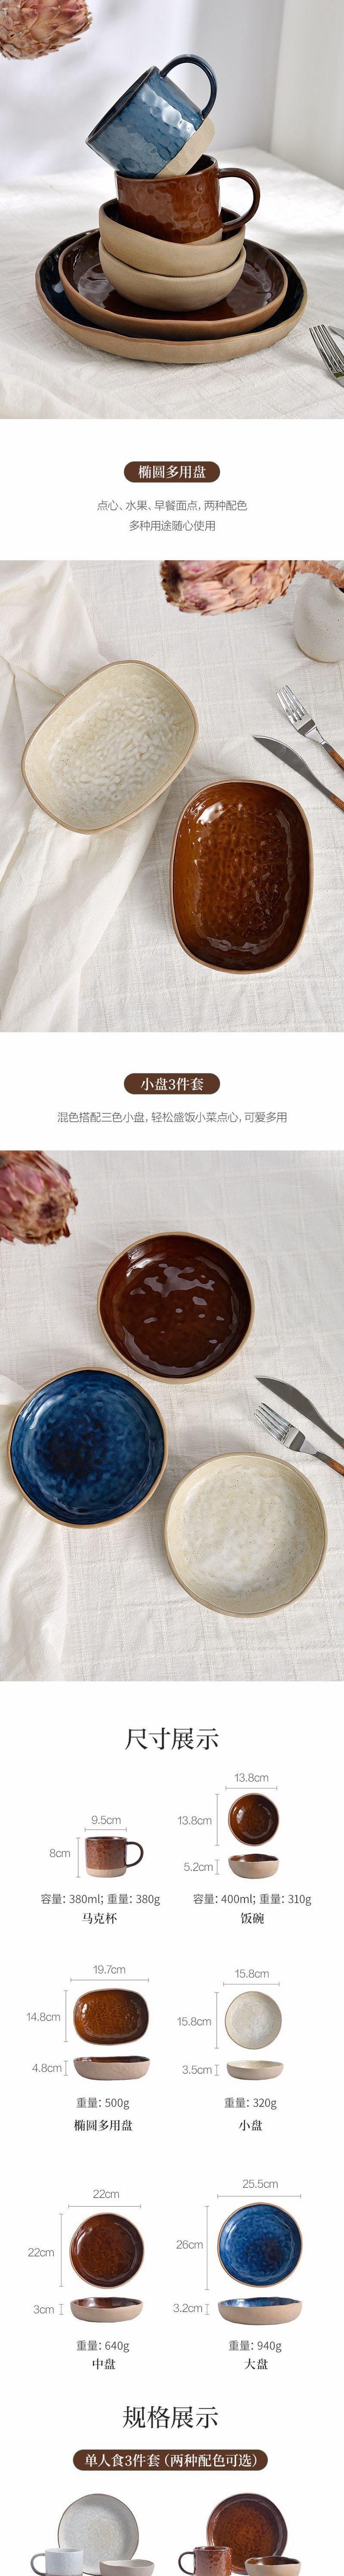 网易严选 质朴禅意 日式手作窑变釉粗陶碗盘餐具 一人食三件套(粉引白)